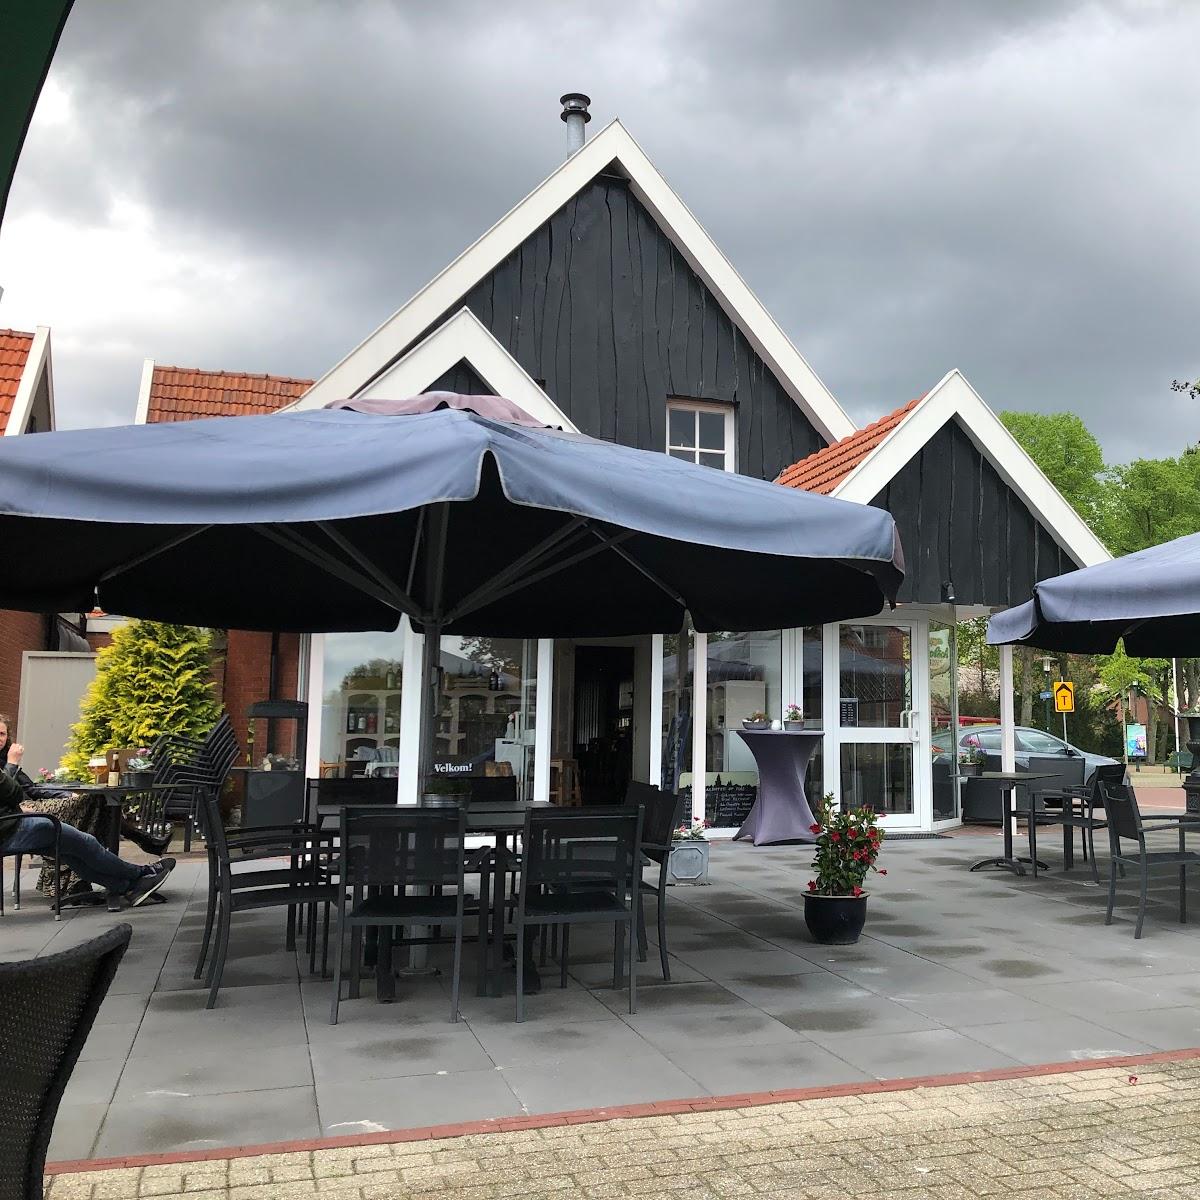 Restaurant "Café Restaurant Waaijer" in Langeveen